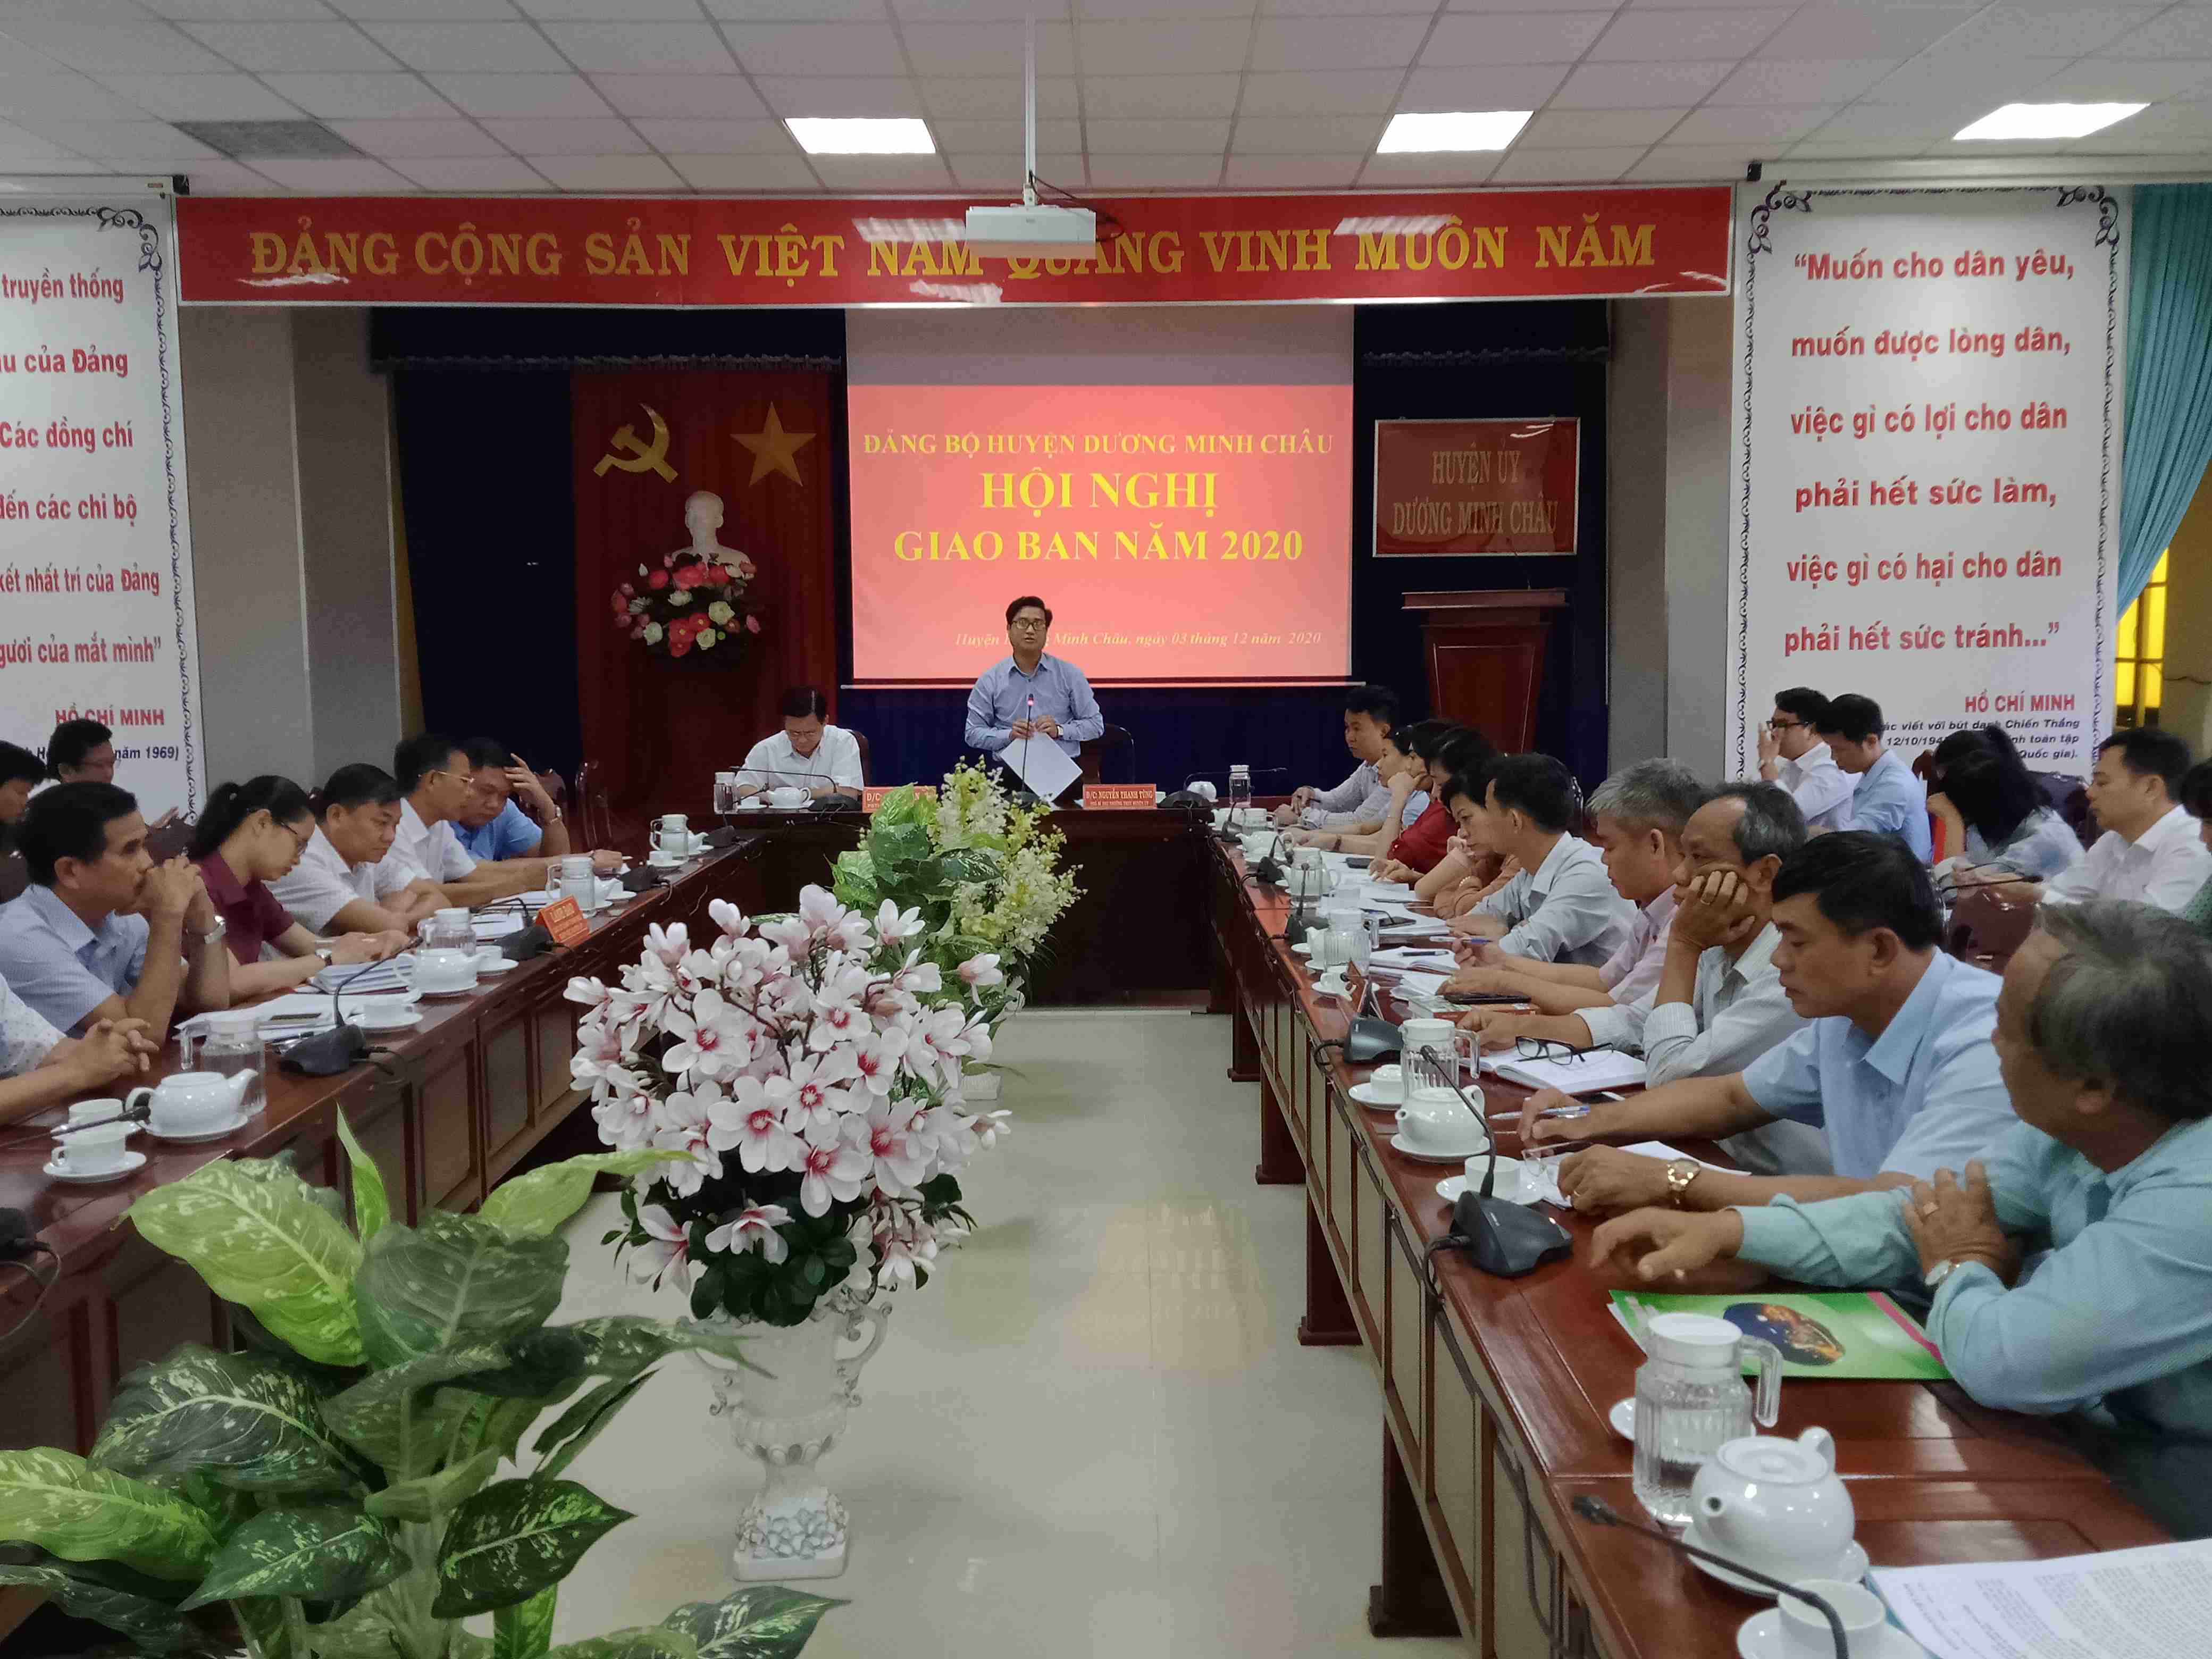 Đảng Bộ Huyện Dương Minh Châu tổ chức hội nghị giao ban năm 2020